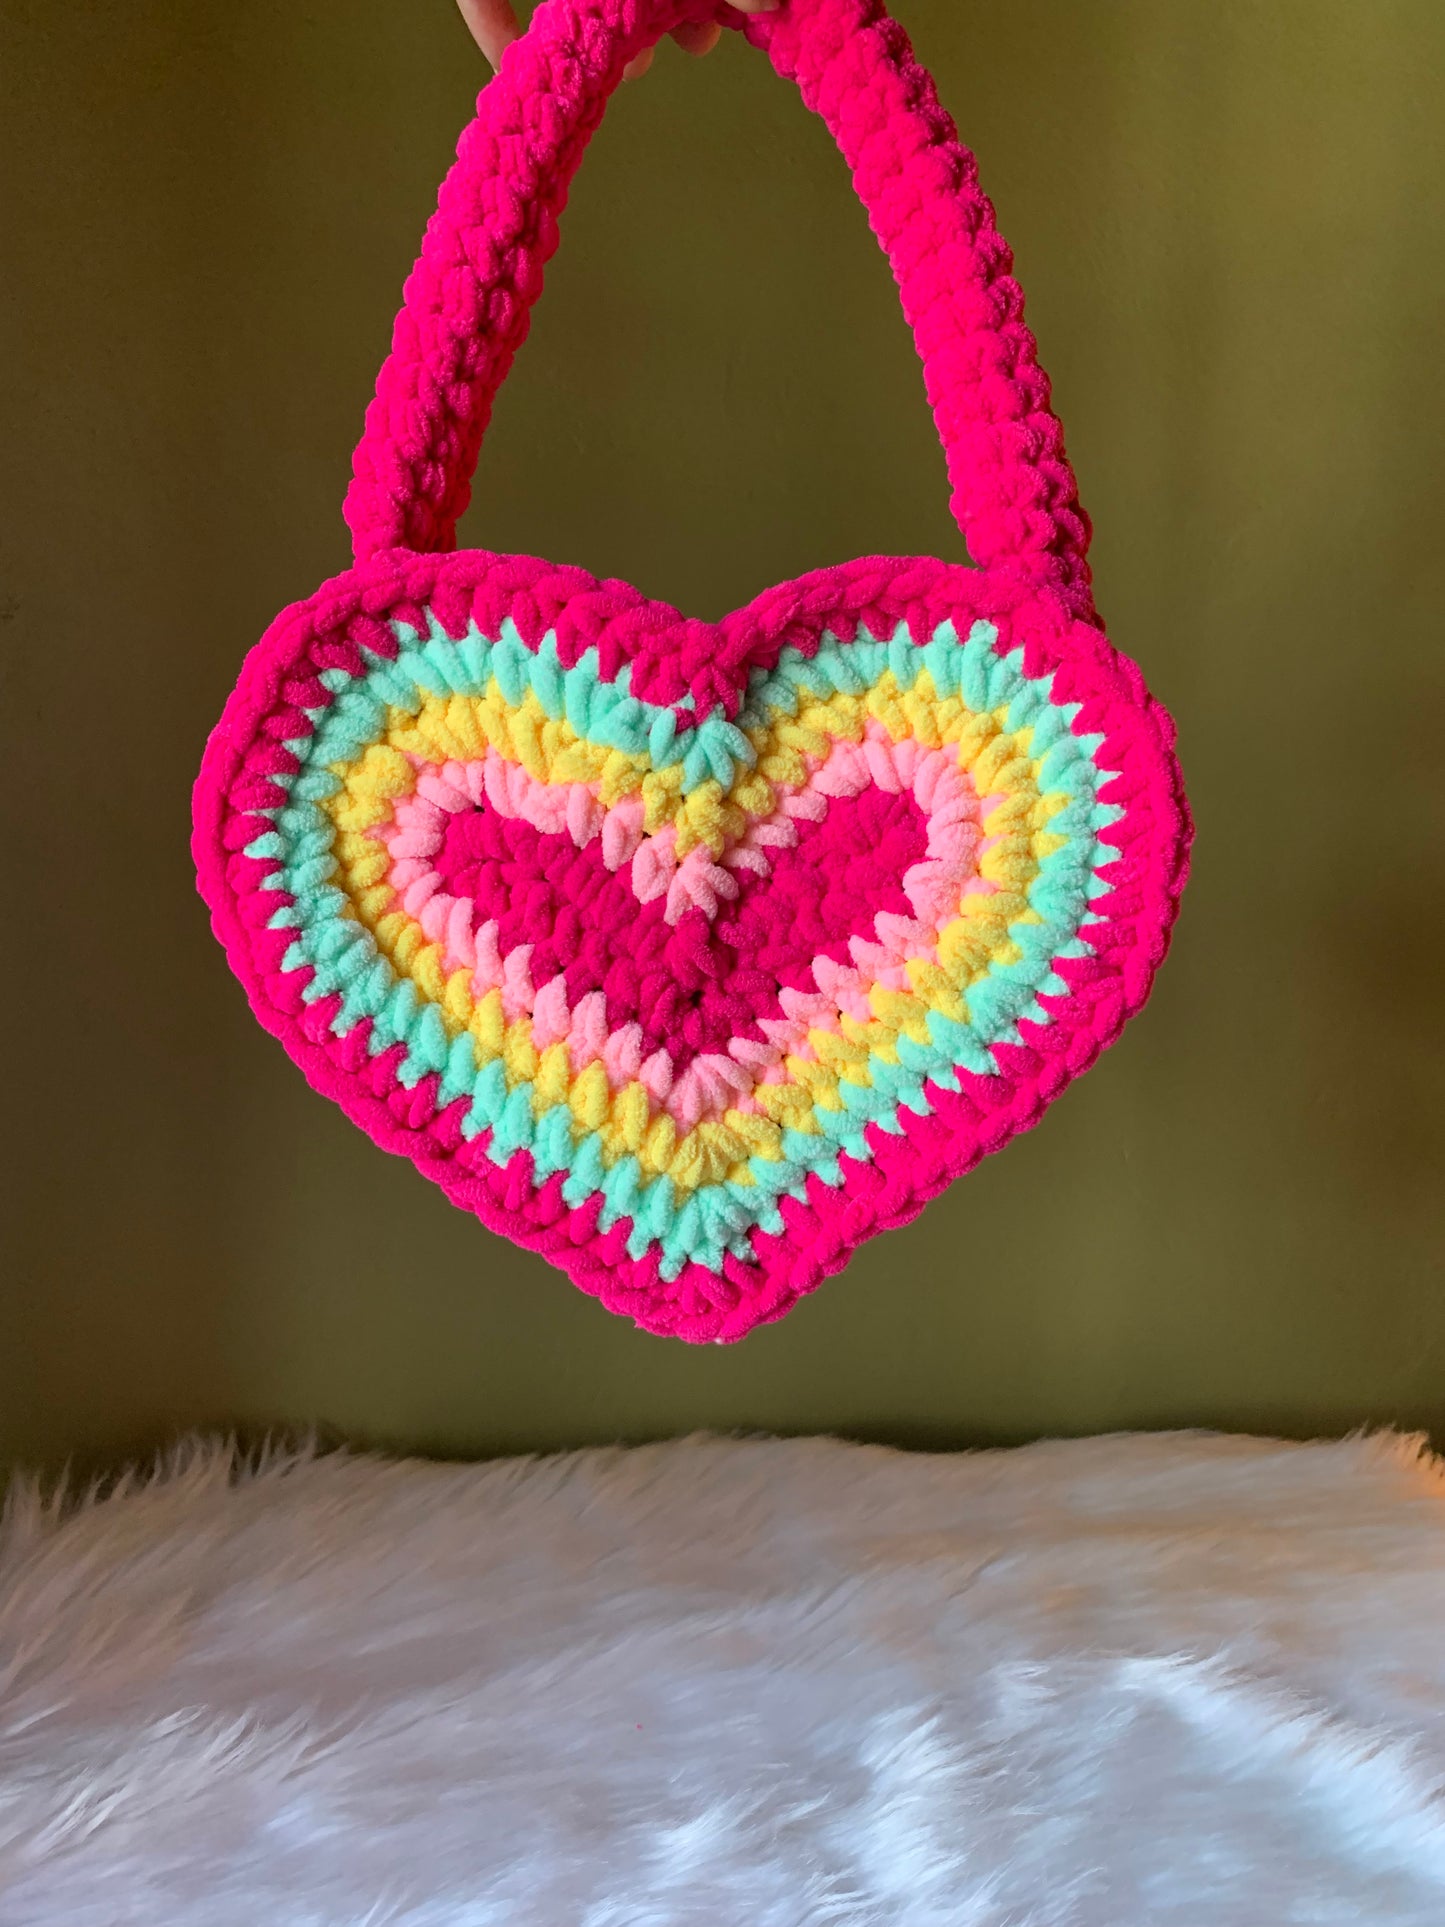 Listo para enviar la mochila del corazón de crochet rosa de color rosa fuerte